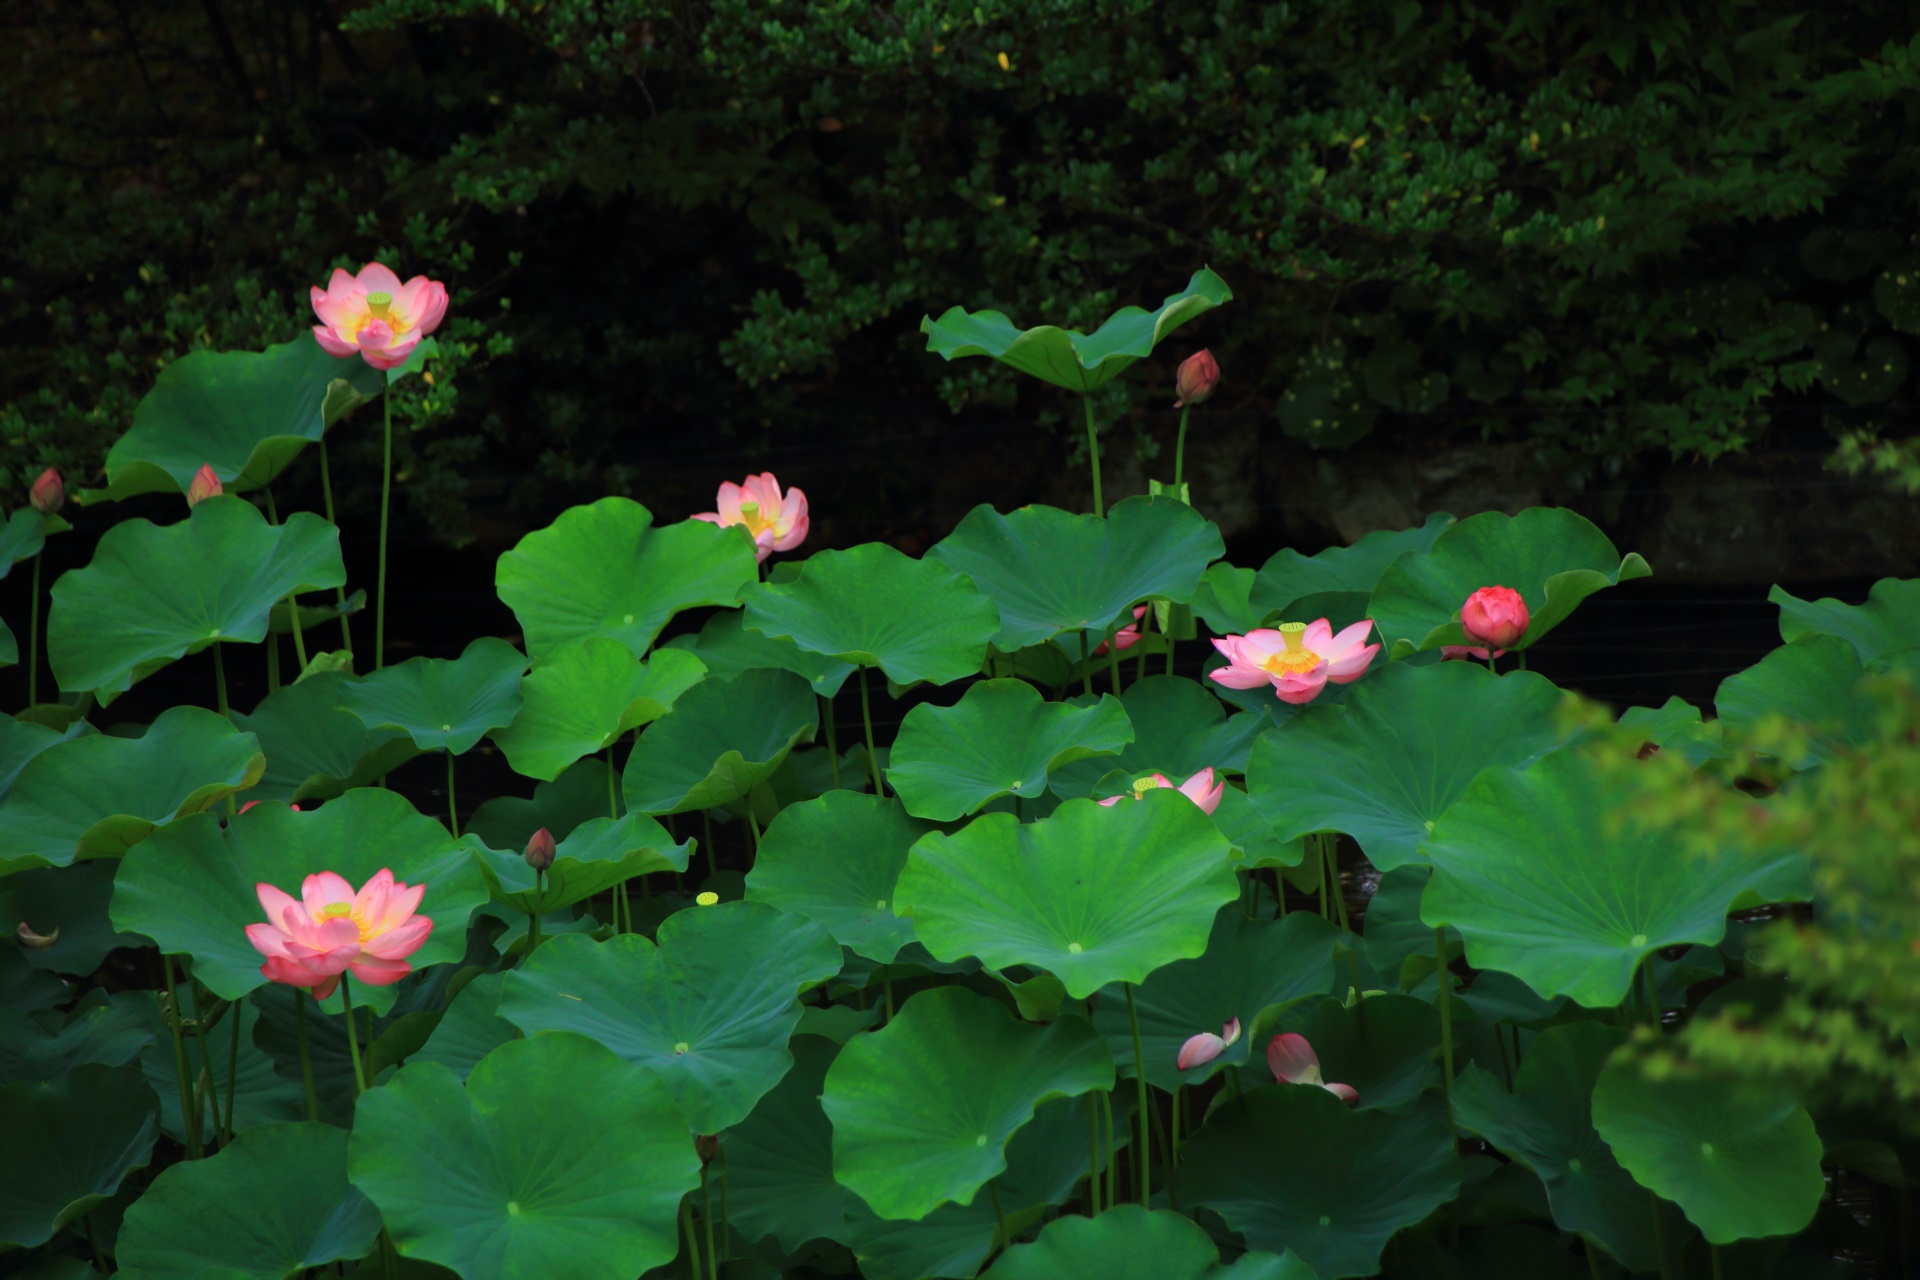 Lotus pond in Otani-Honbyo-Mausoleum in Kyoto,Japan